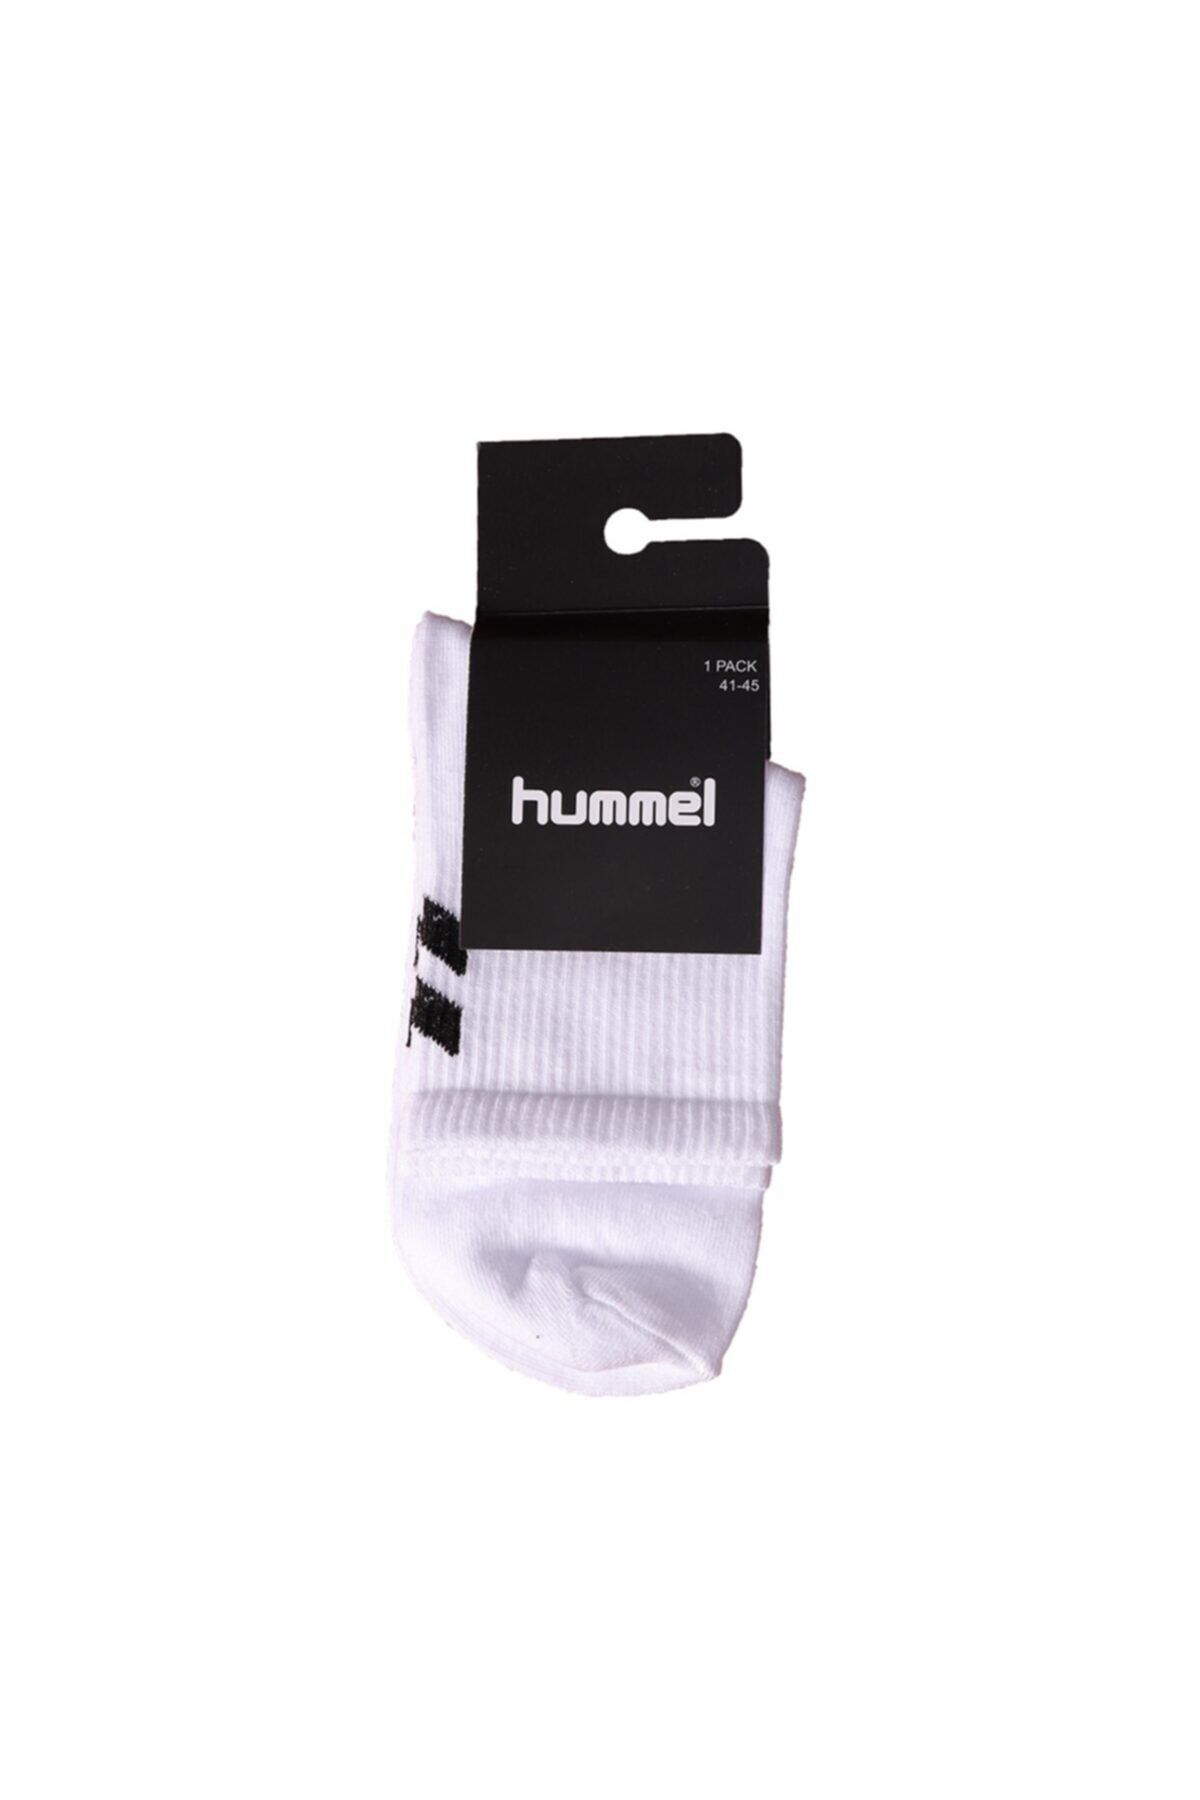 hummel Unisex Beyaz Desenli Çorap